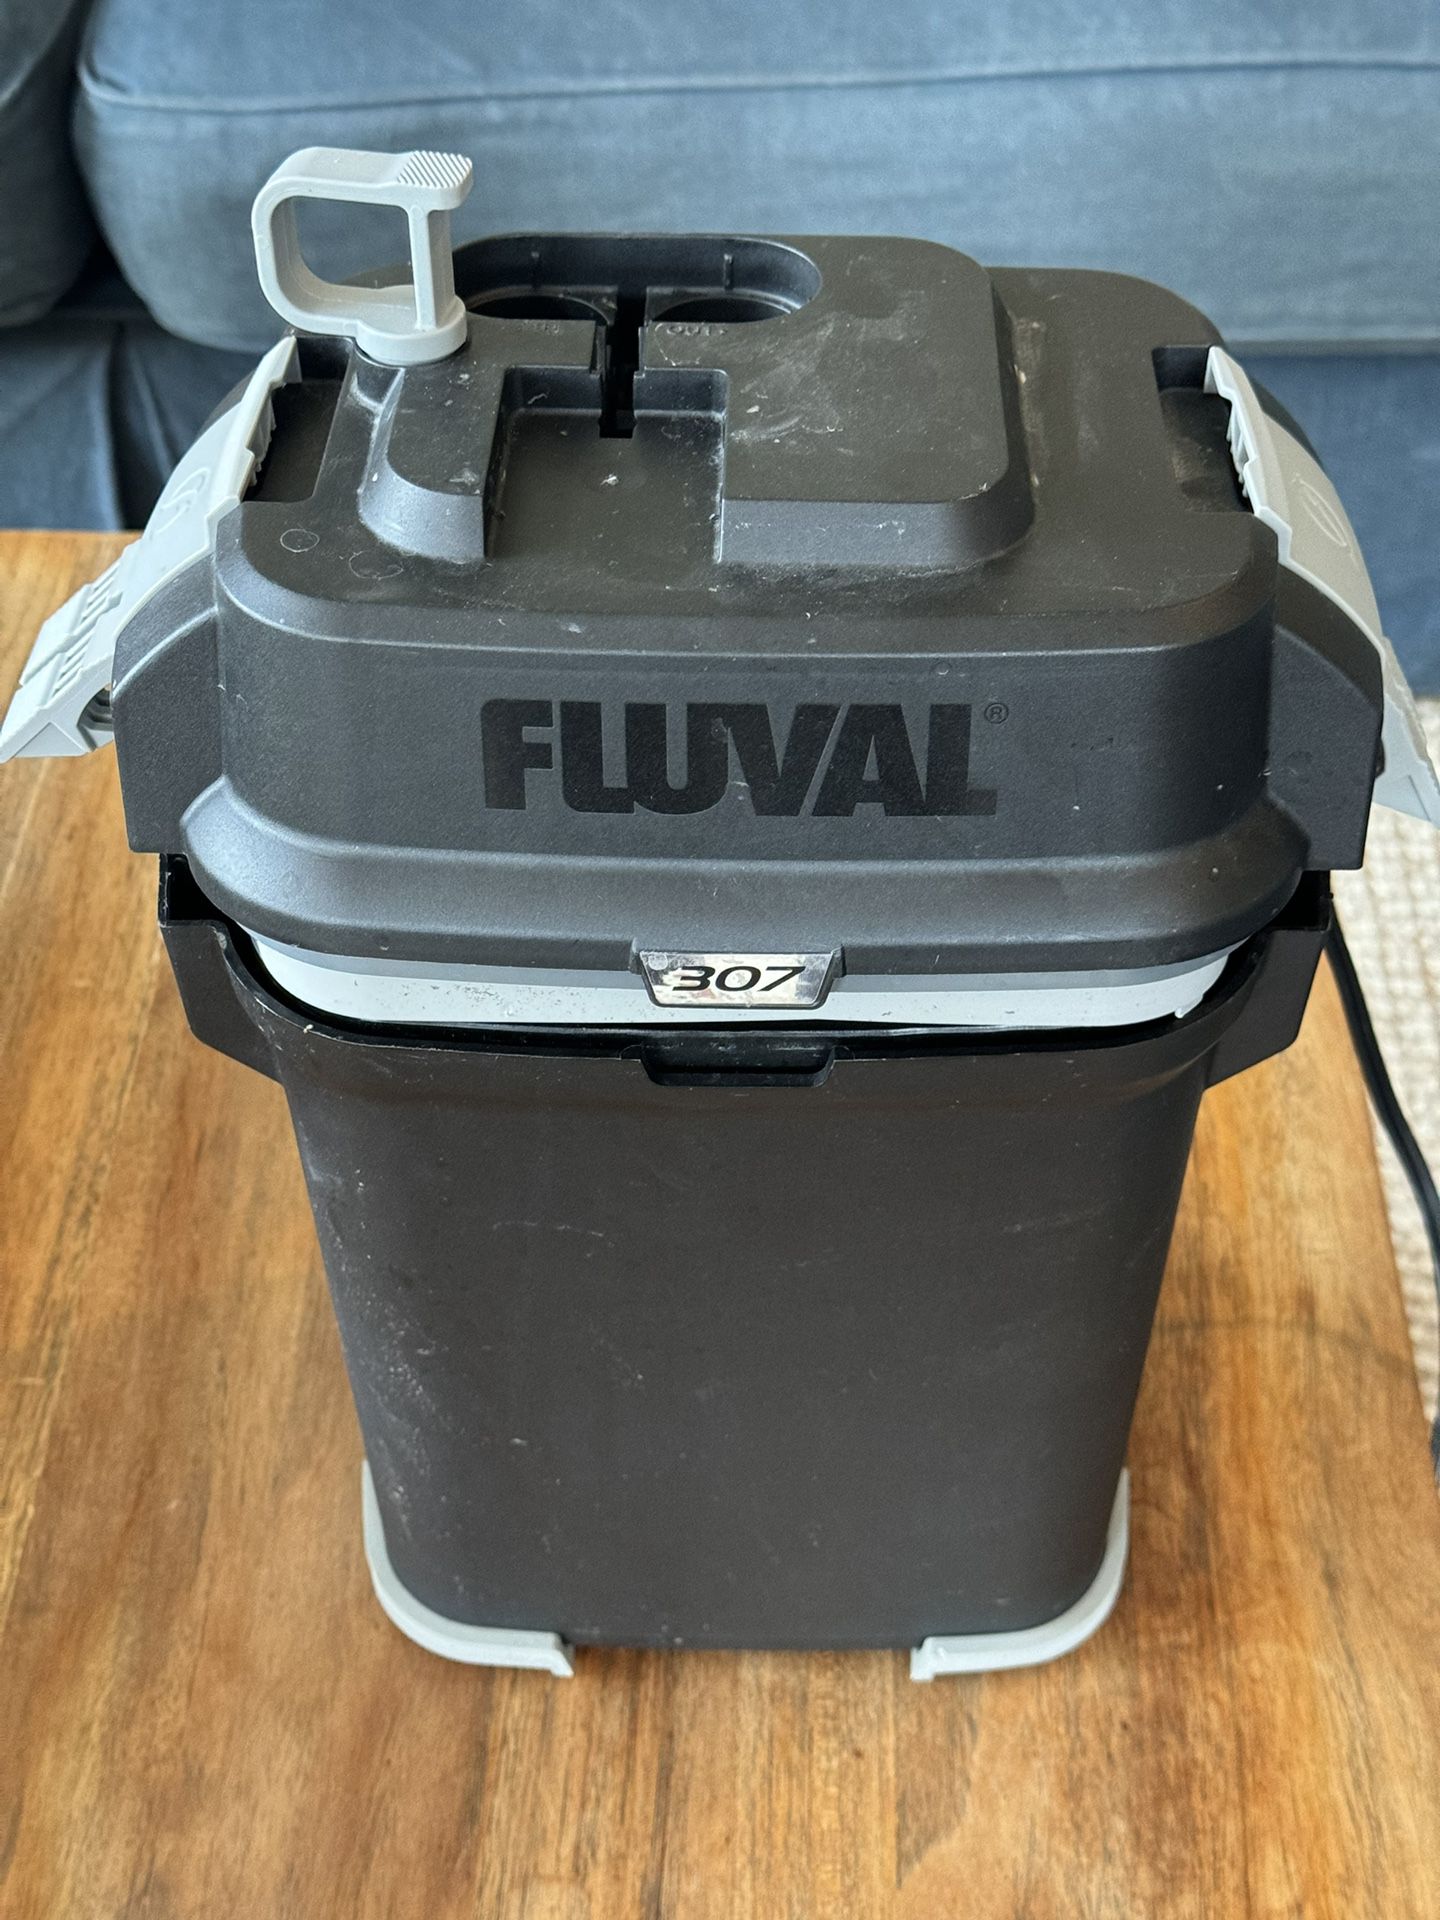 Fluval 307 Canister filter